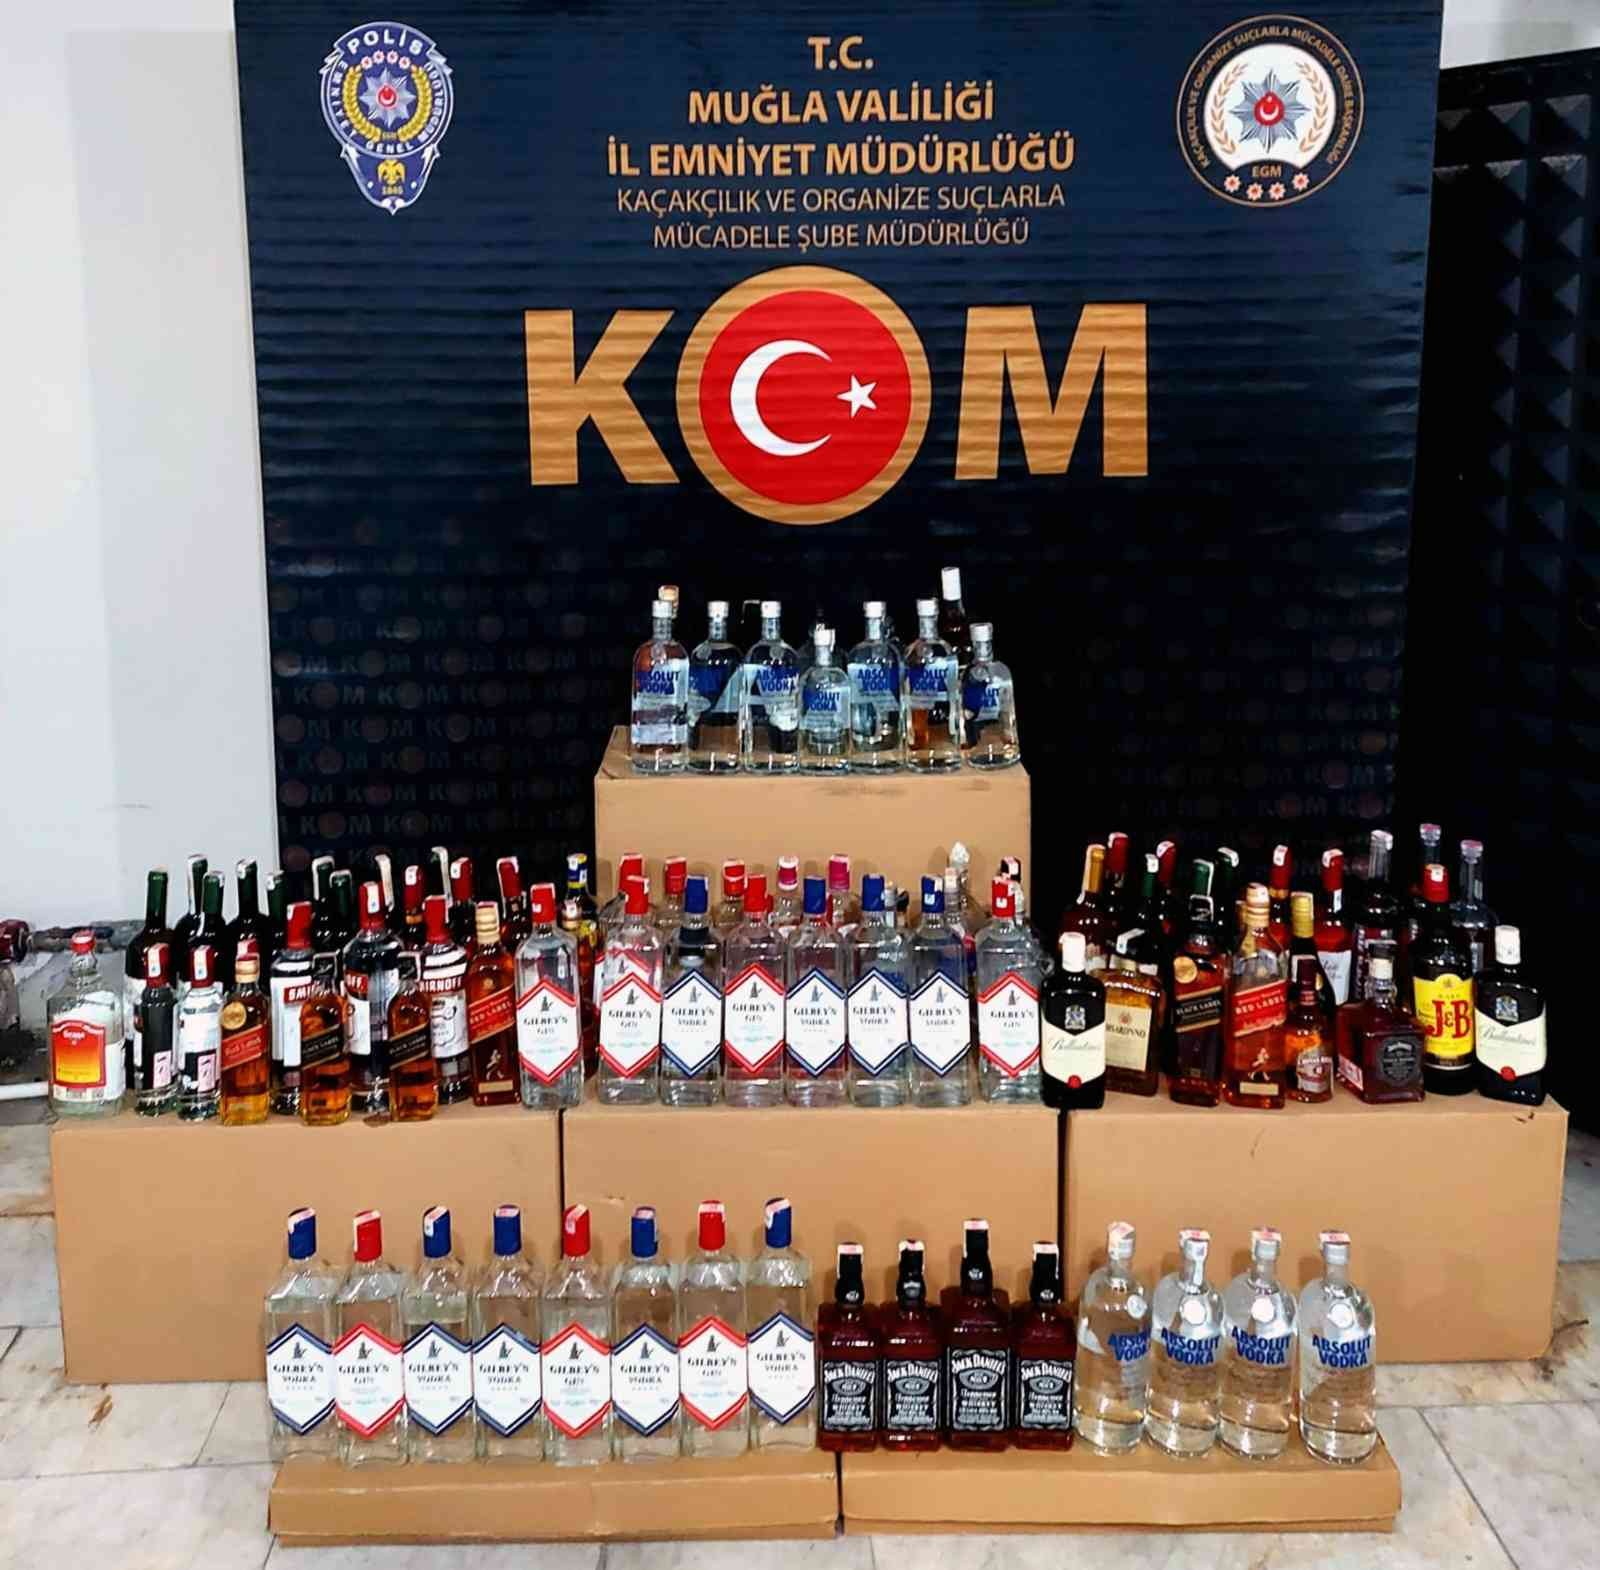 Muğla’nın turistik ilçelerinde sahte alkol operasyonu #mugla